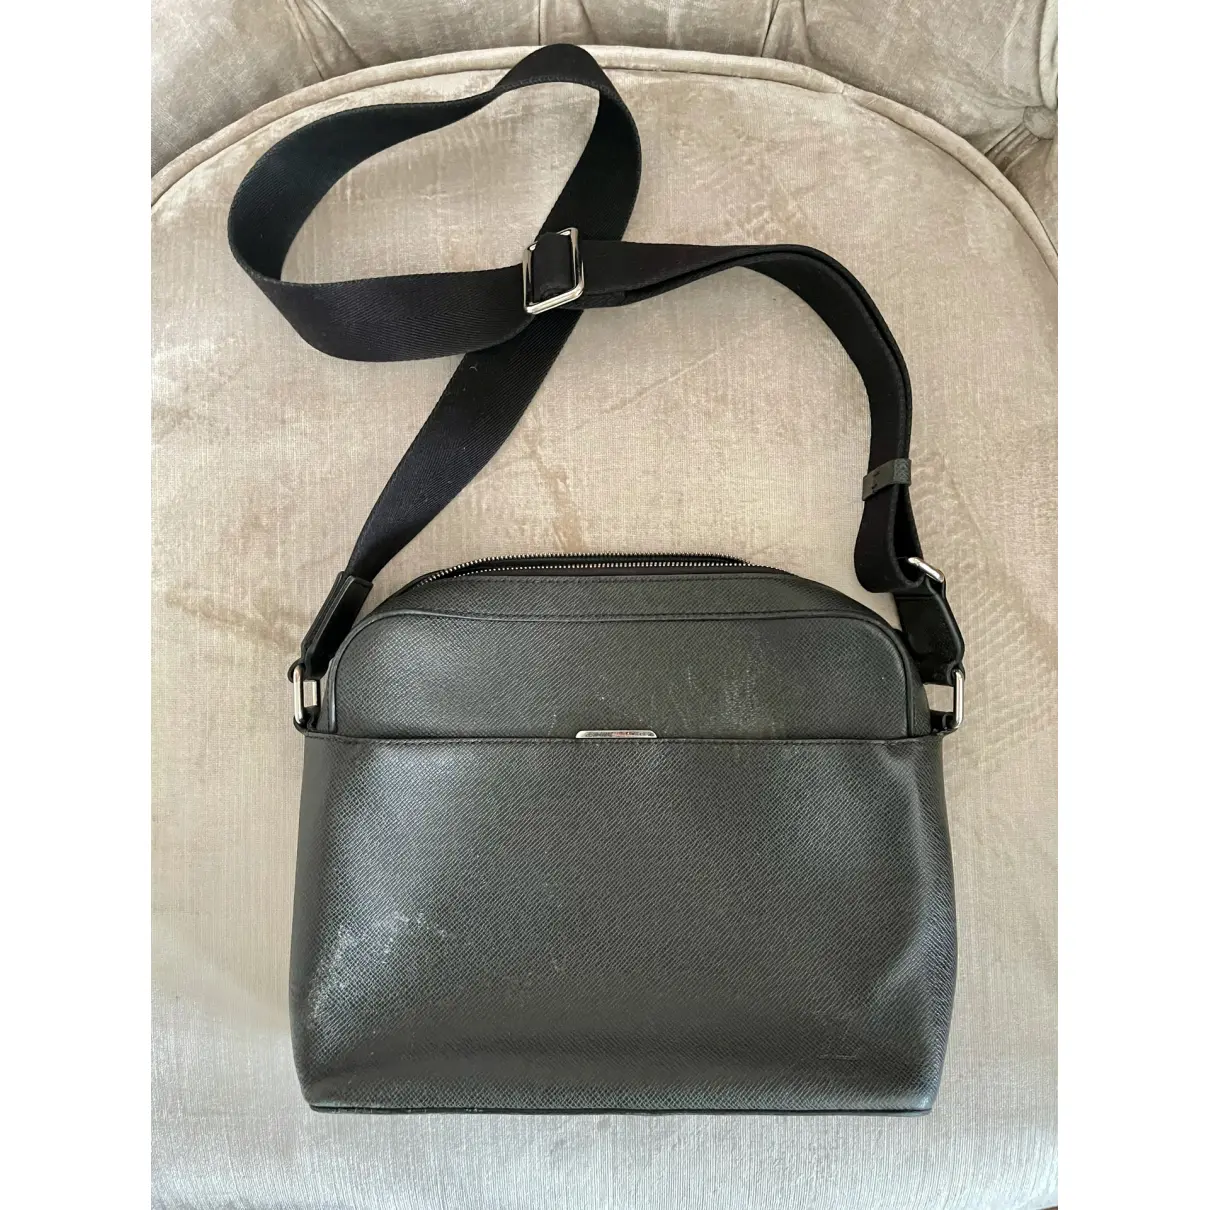 Anton leather bag Louis Vuitton